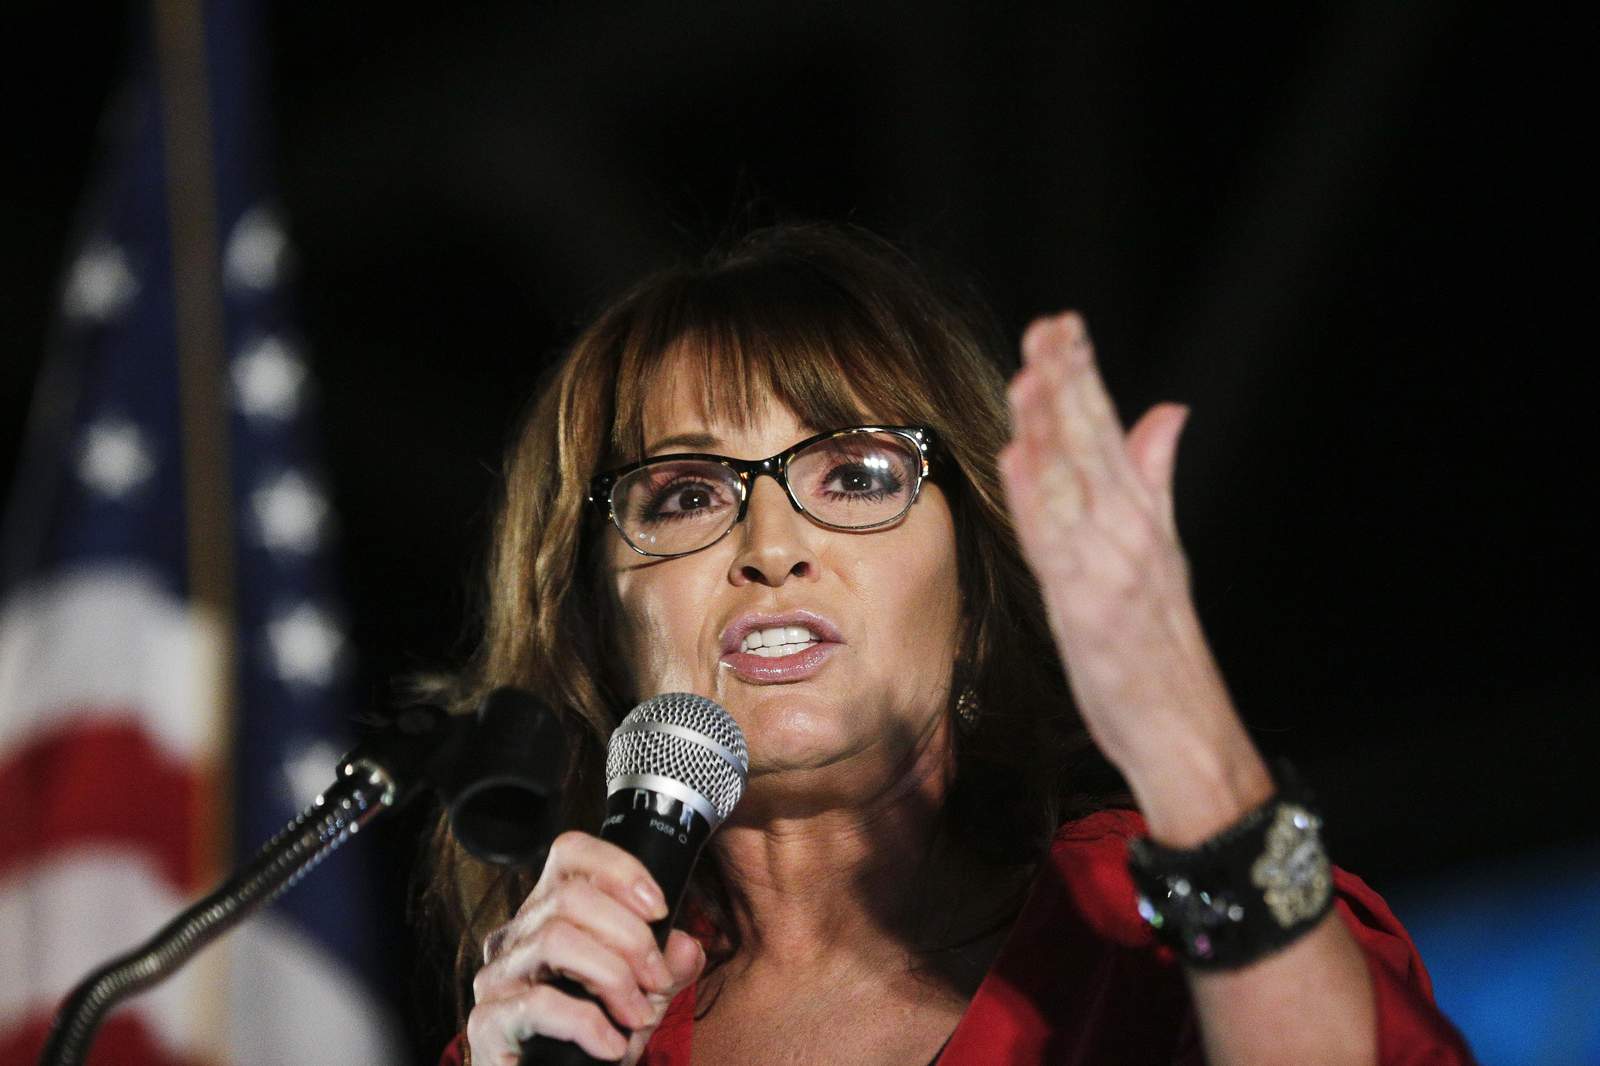 Sarah Palin confirms COVID-19 diagnosis, urges steps like masks